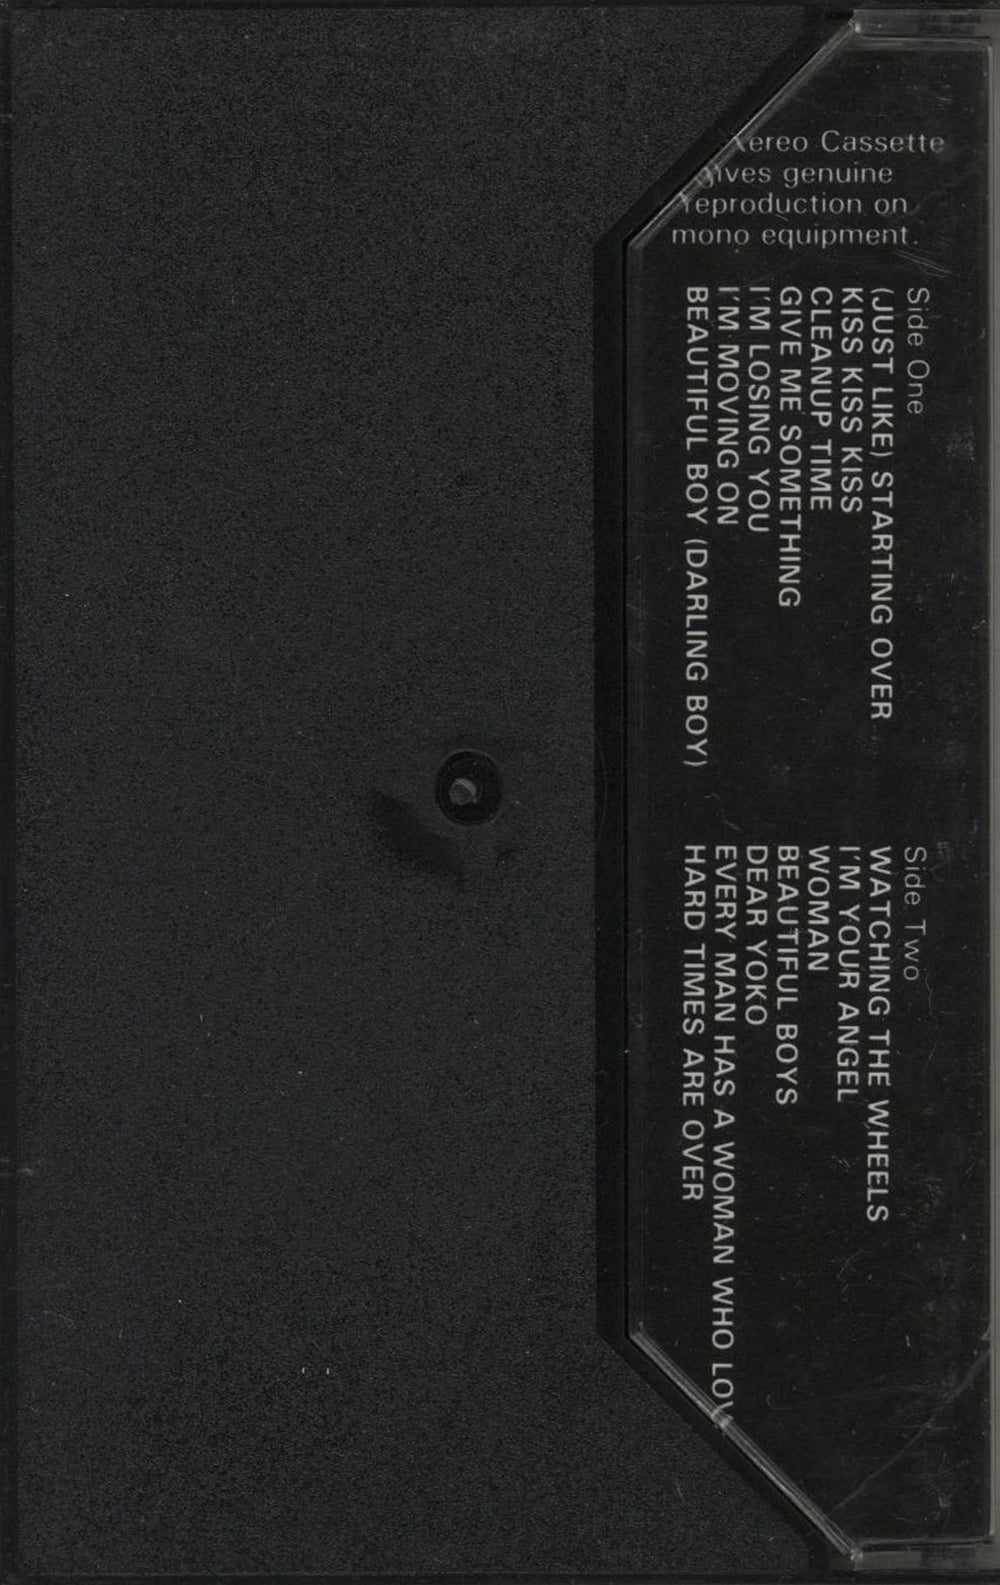 John Lennon Double Fantasy UK cassette album